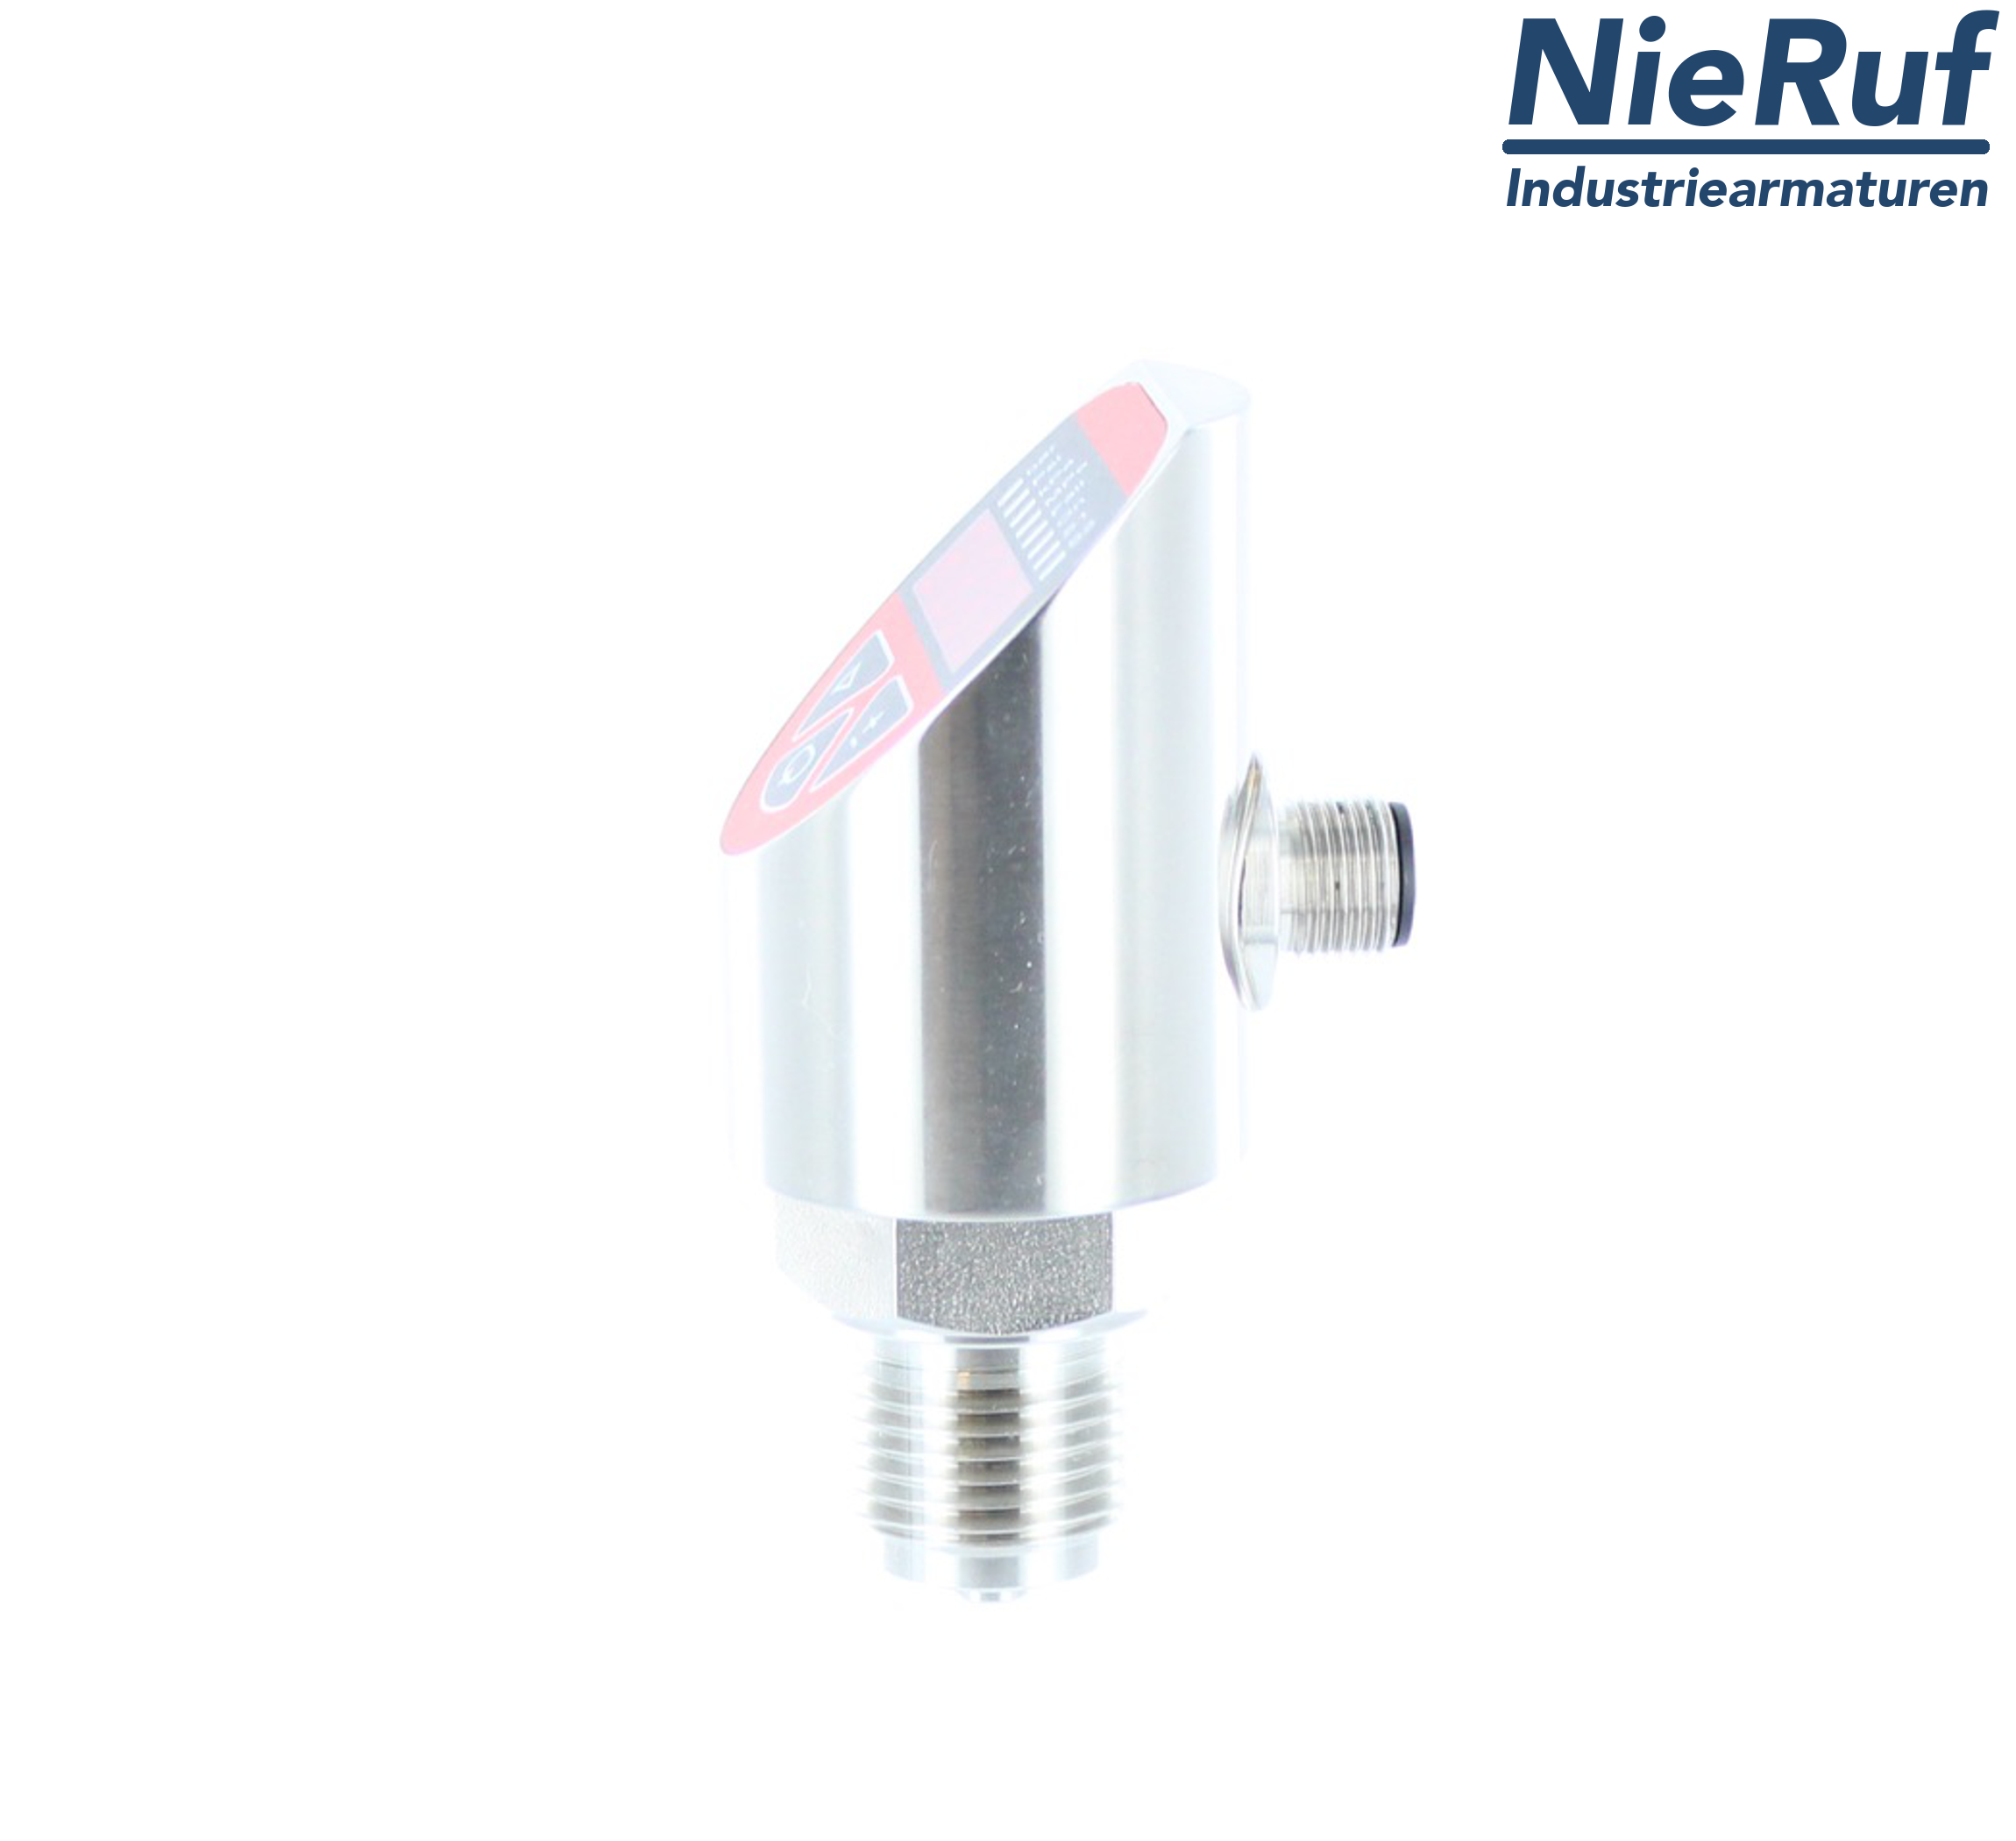 digital pressure sensor G 1/2" B IB   5-wire: 2xPNP, 1x4 - 20mA EPDM 0,0 - 10,0 bar